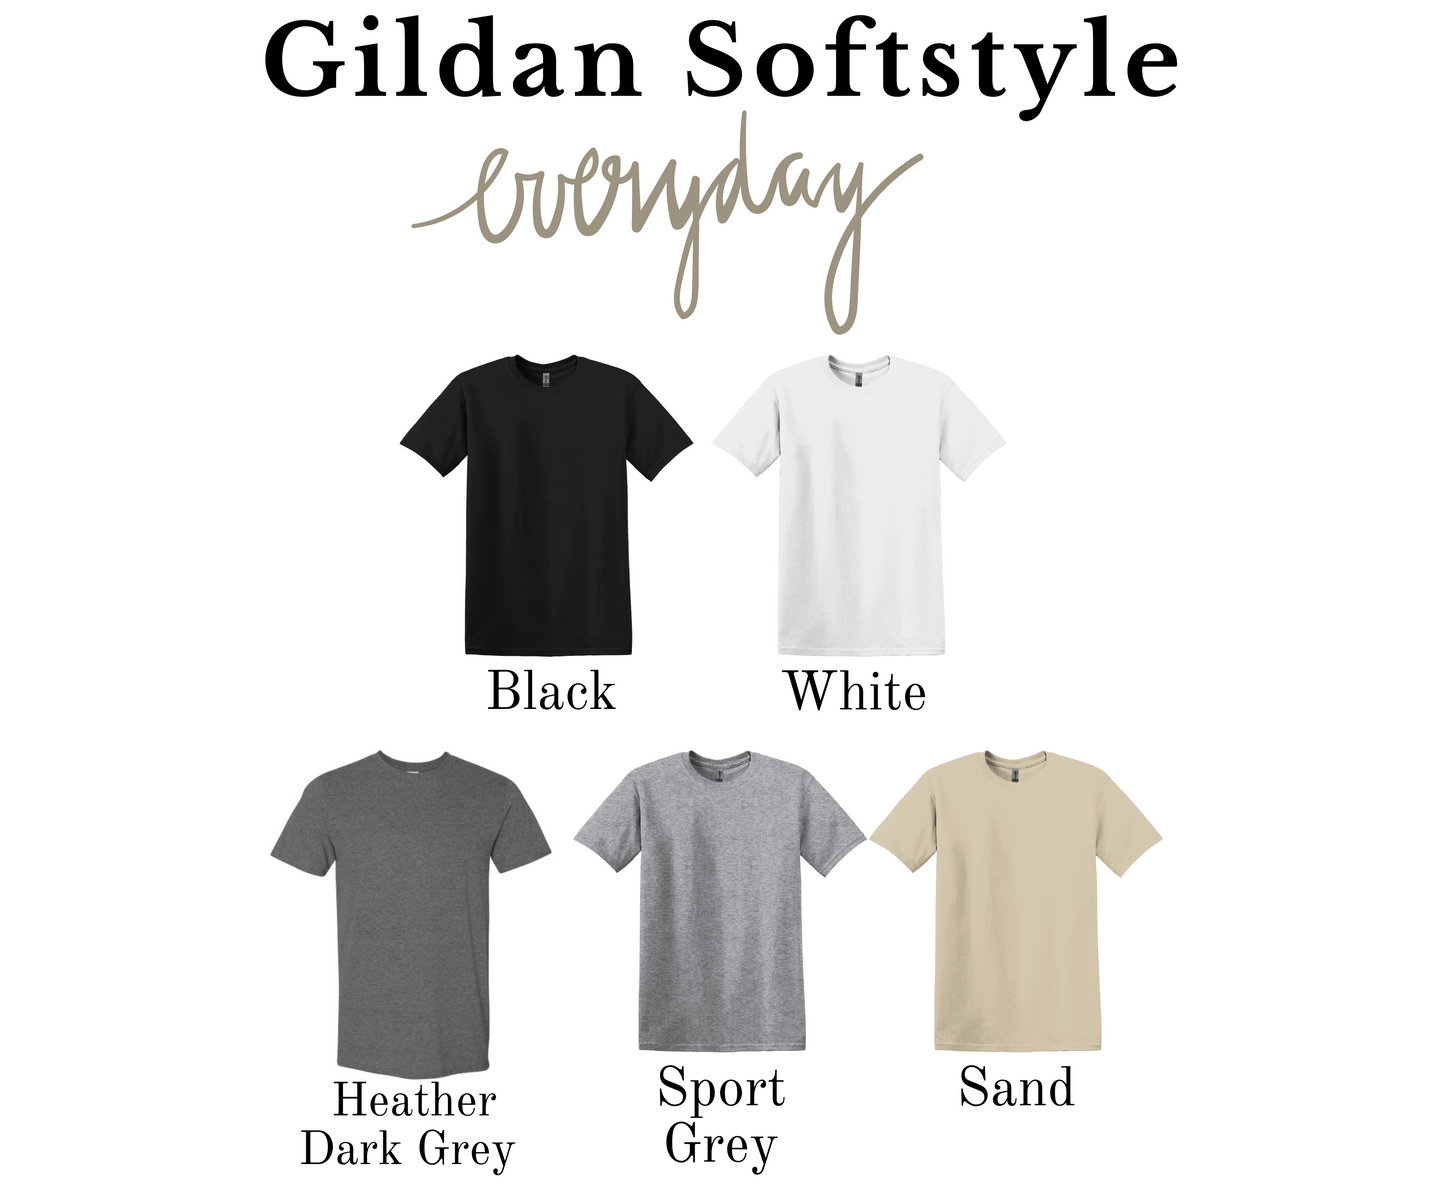 Feeling Lucky Gildan Softstyle Tshirt or Sweatshirt